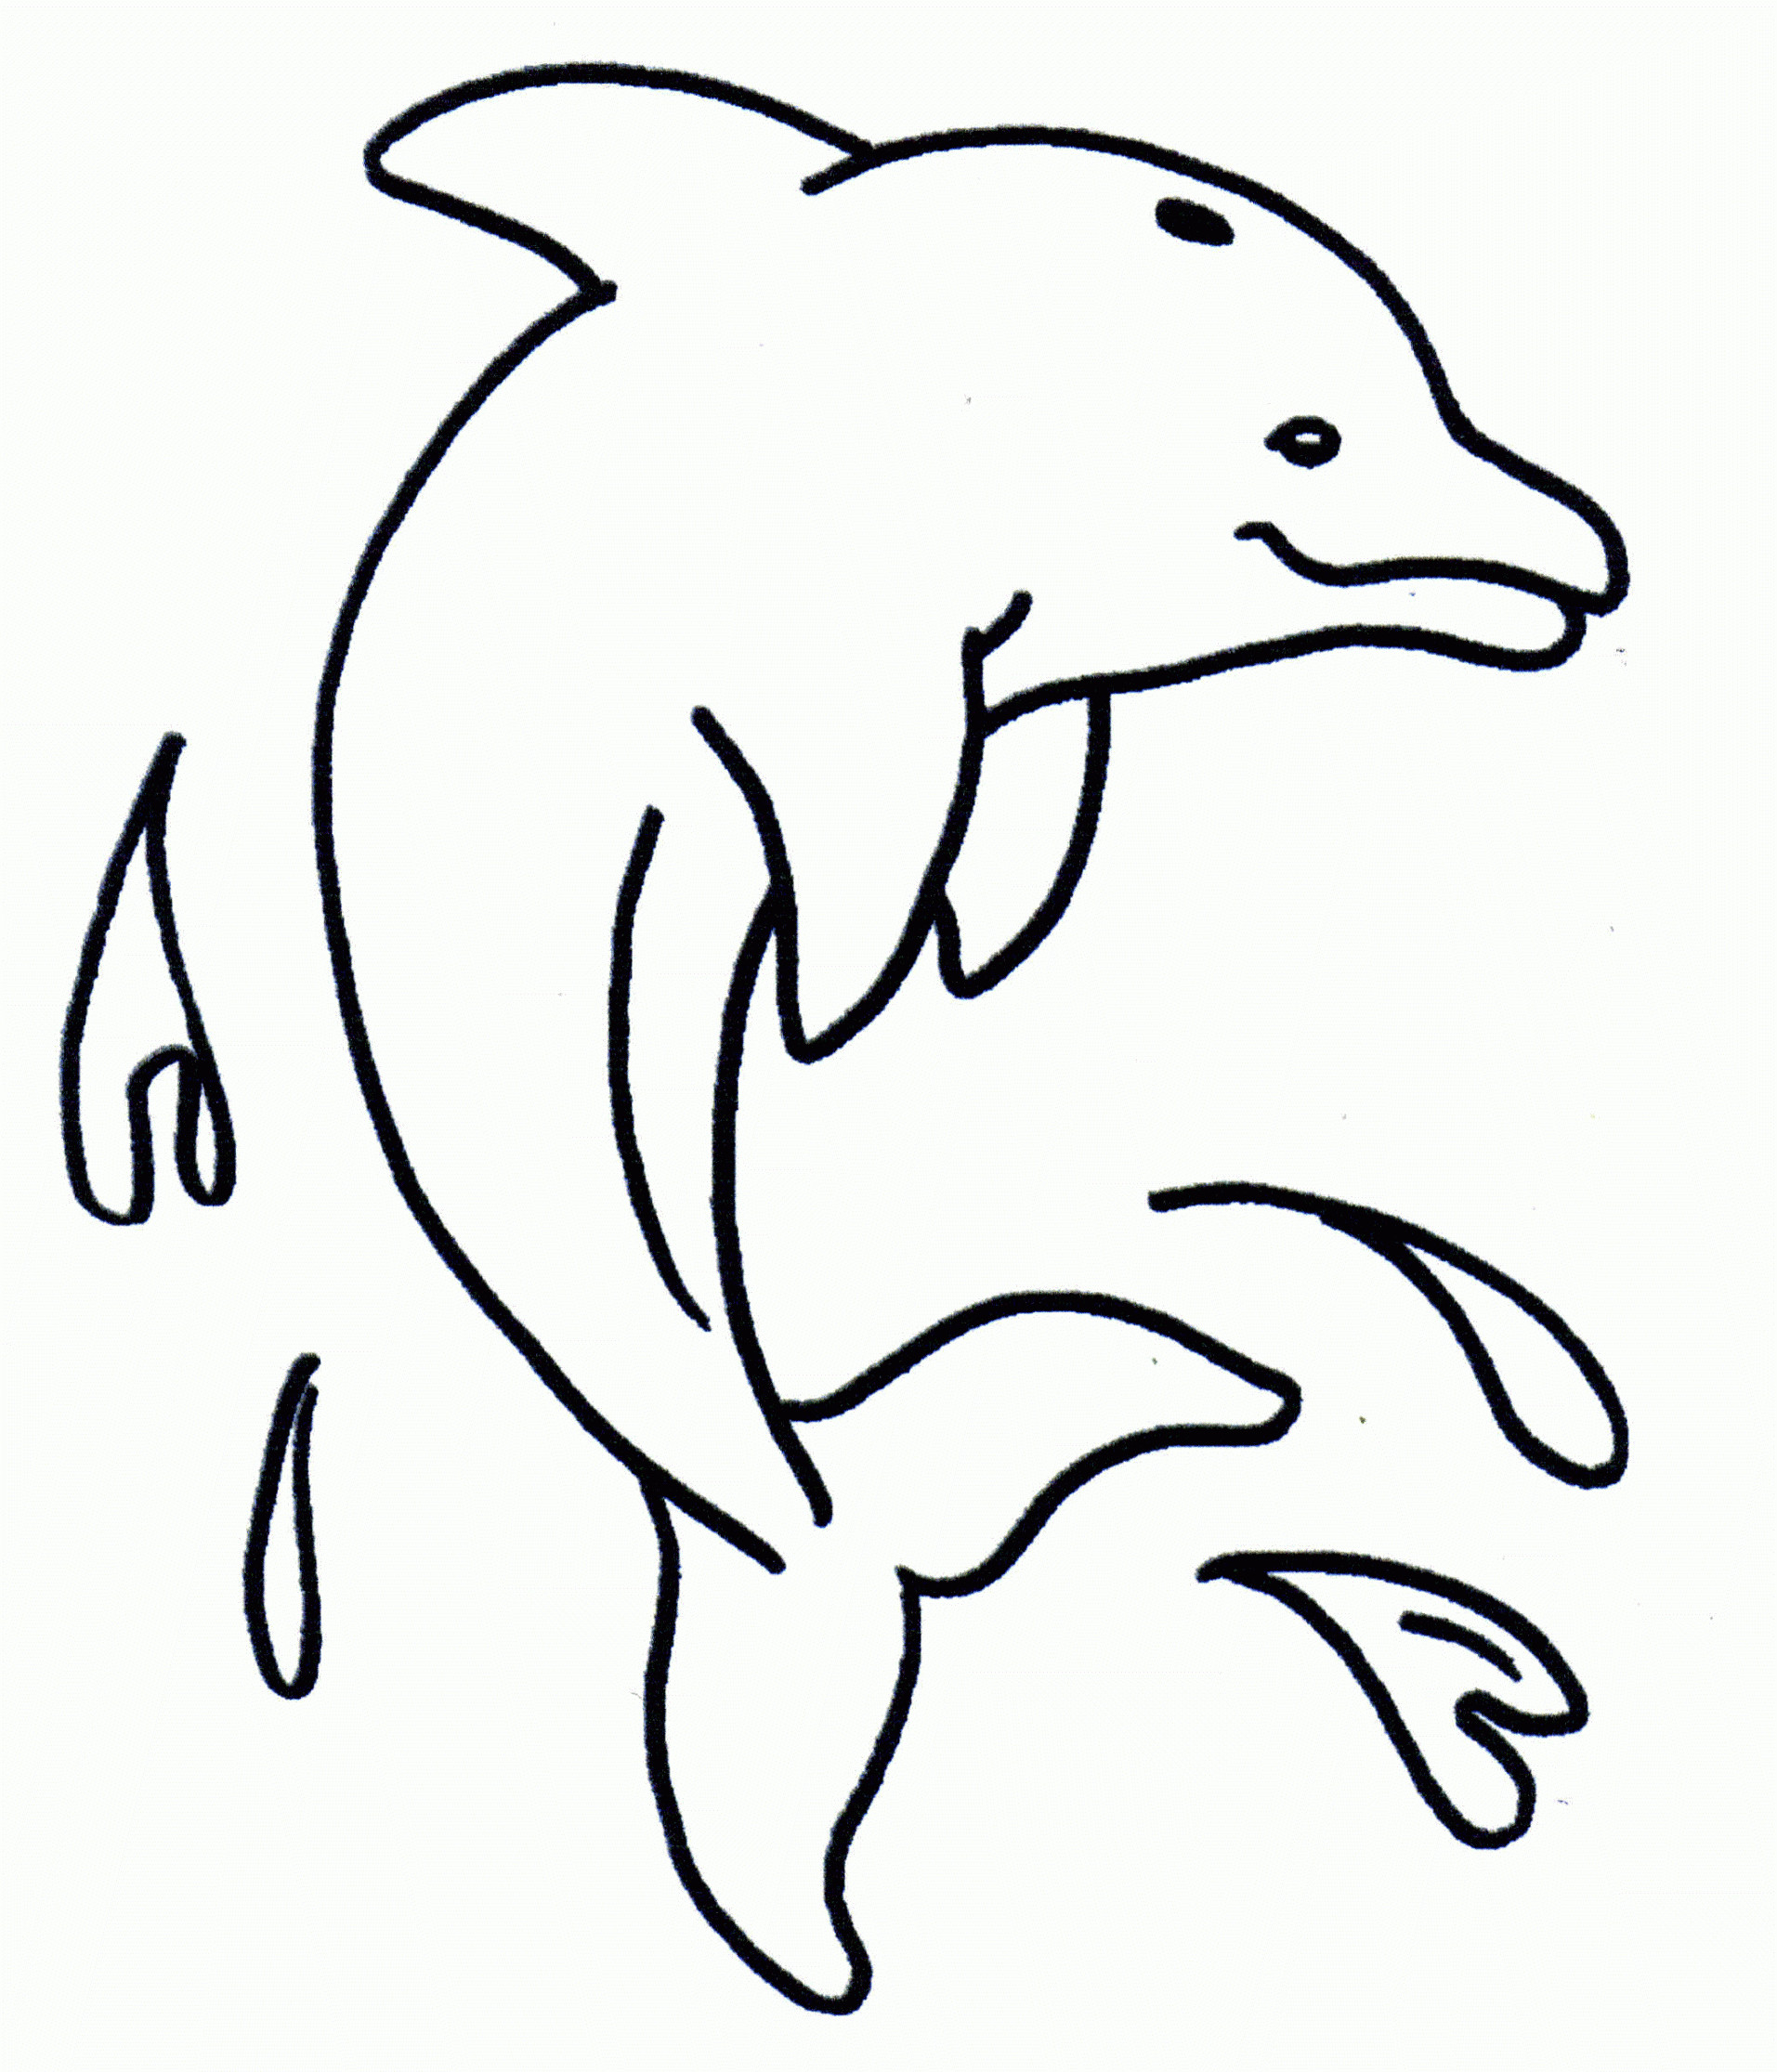 Malvorlagen Delfin
 Ausmalbilder Delphin zum Ausdrucken Malvorlagentv